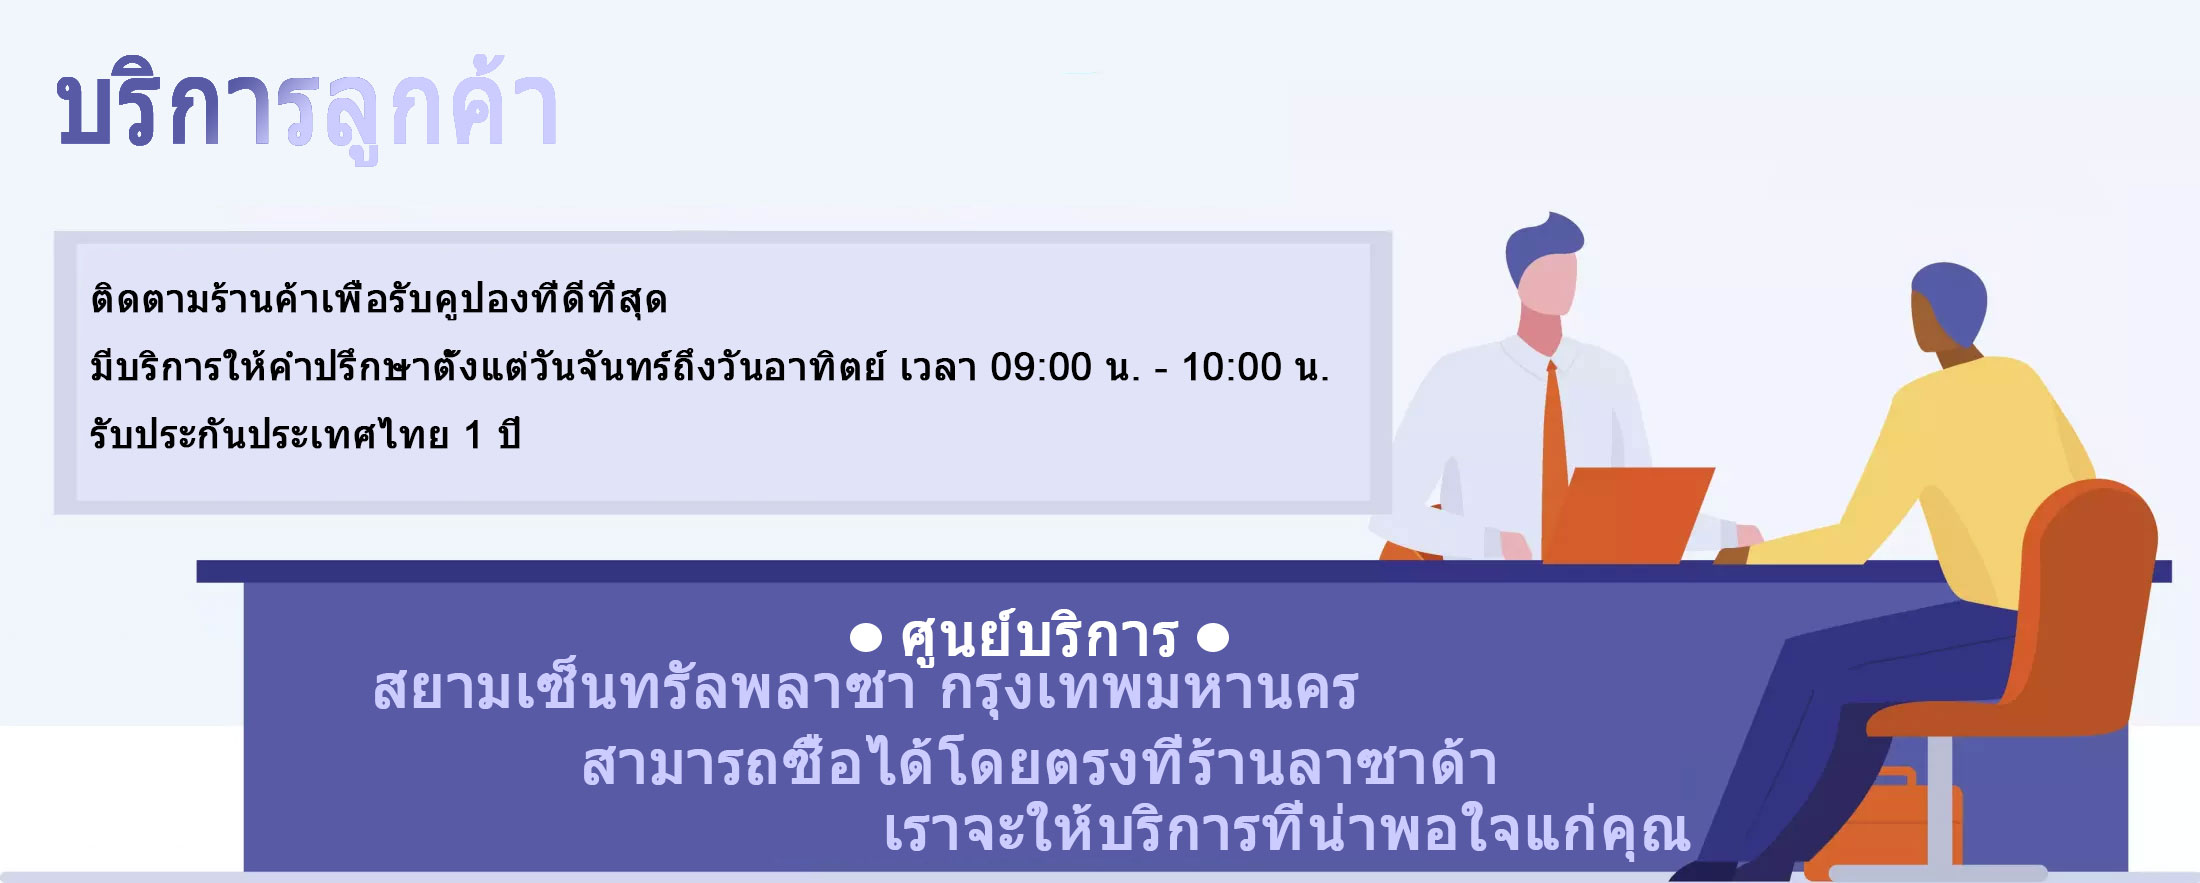 ข้อมูลประกอบของ Realmi Thailand Center แท็บเล็ตหน้าจอใหญ่ 10.1 นิ้ว แท็บเล็ตอัจฉริยะ 2-in-1 หน่วยความจำ 8+128GB กล้อง 13MP+24MP แบตเตอรี่ทนทานและจดจำลายนิ้วมือราคาไม่แพง การจดจำใบหน้ารองรับการใช้หน้าจอสัมผัสด้วยปากกา ประสบการณ์การเล่นเกมที่ราบรื่น รับประกัน 1 ปี